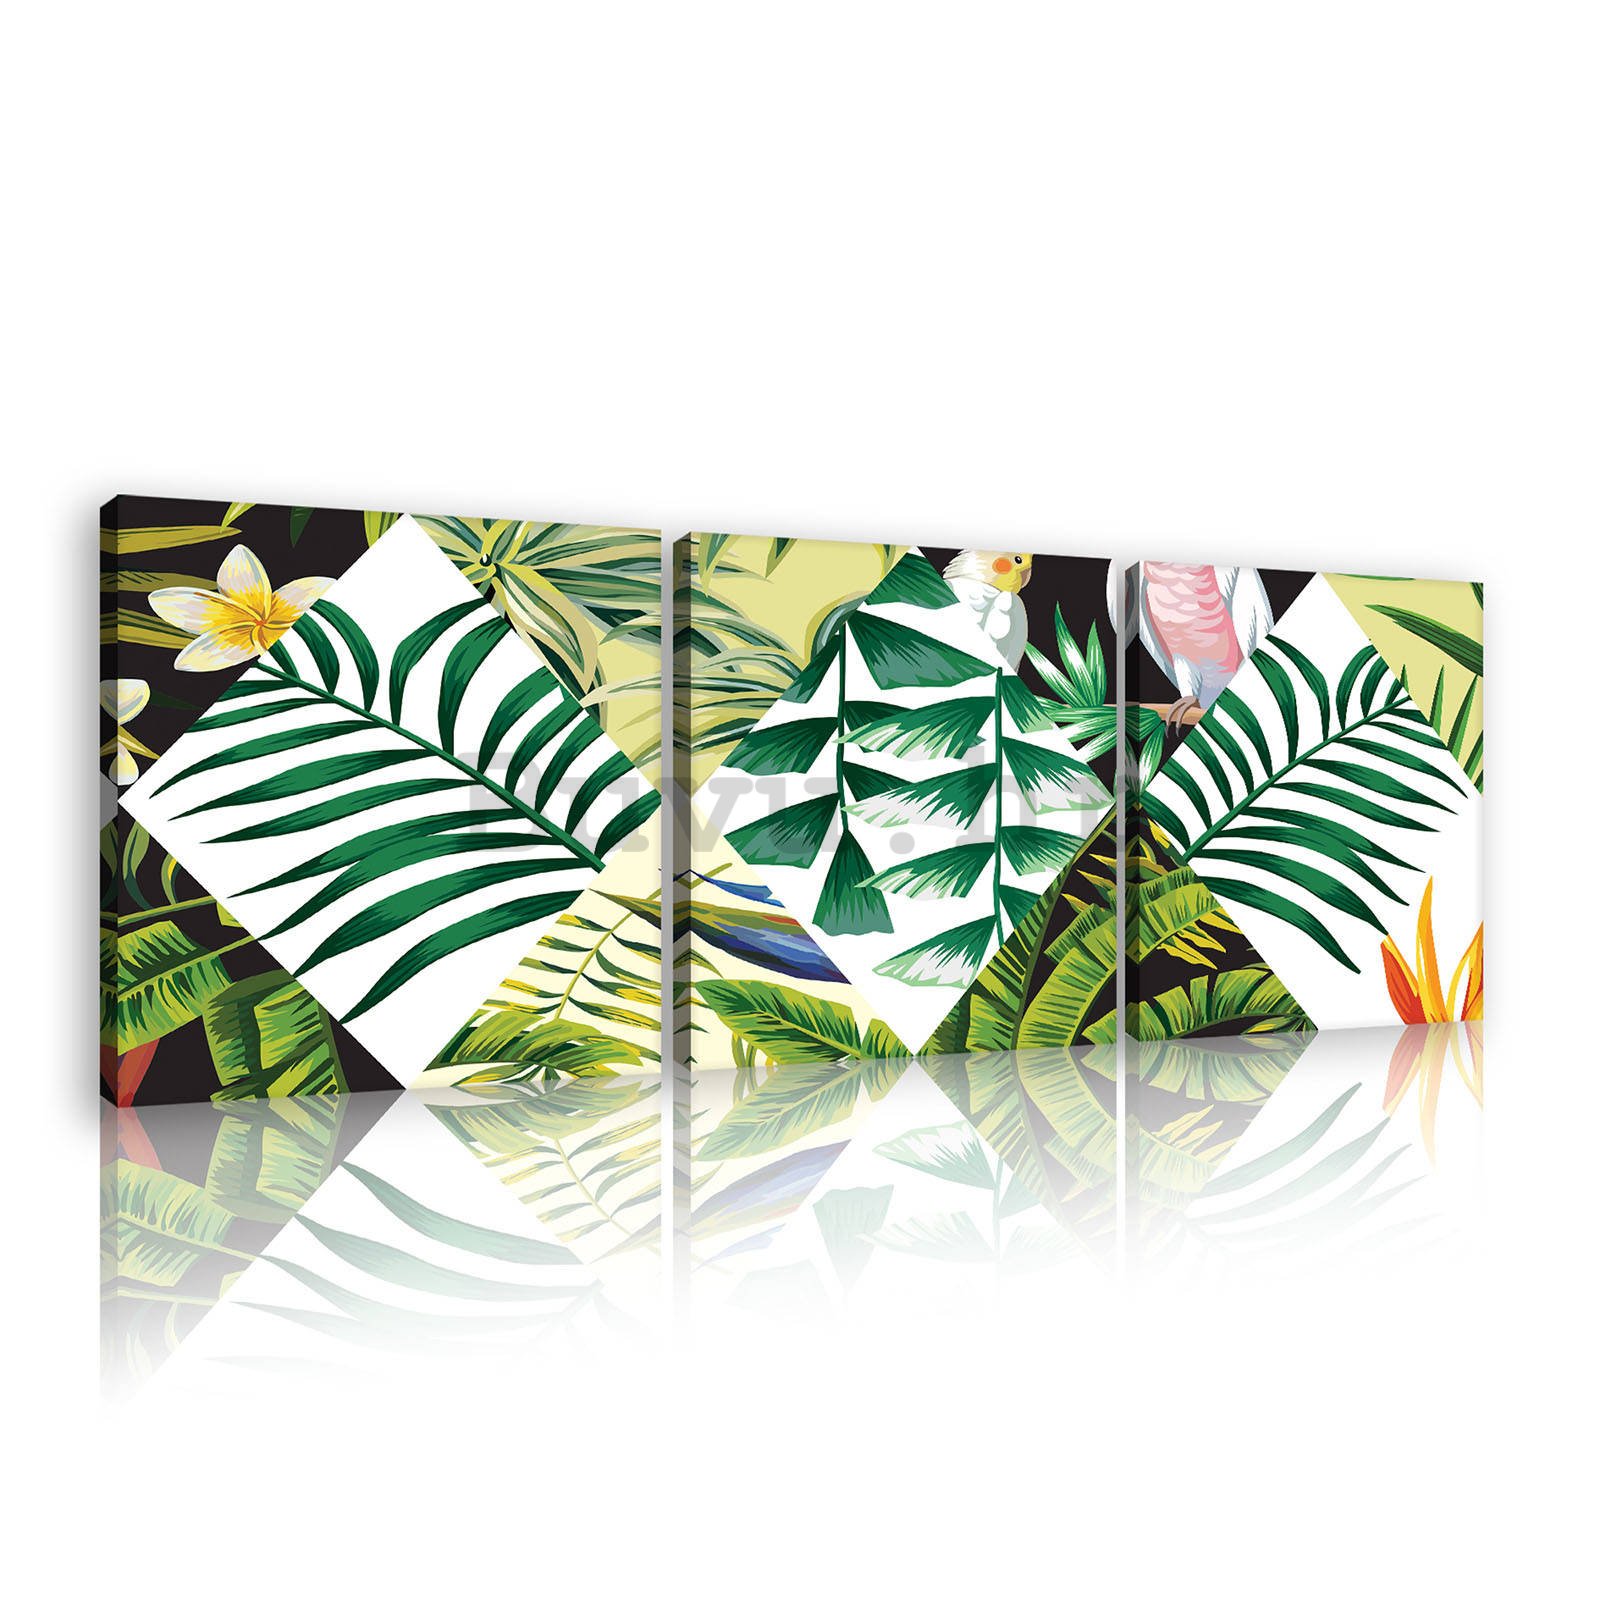 Slika na platnu: Oslikana tropska flora (2) - set 3kom 25x25cm